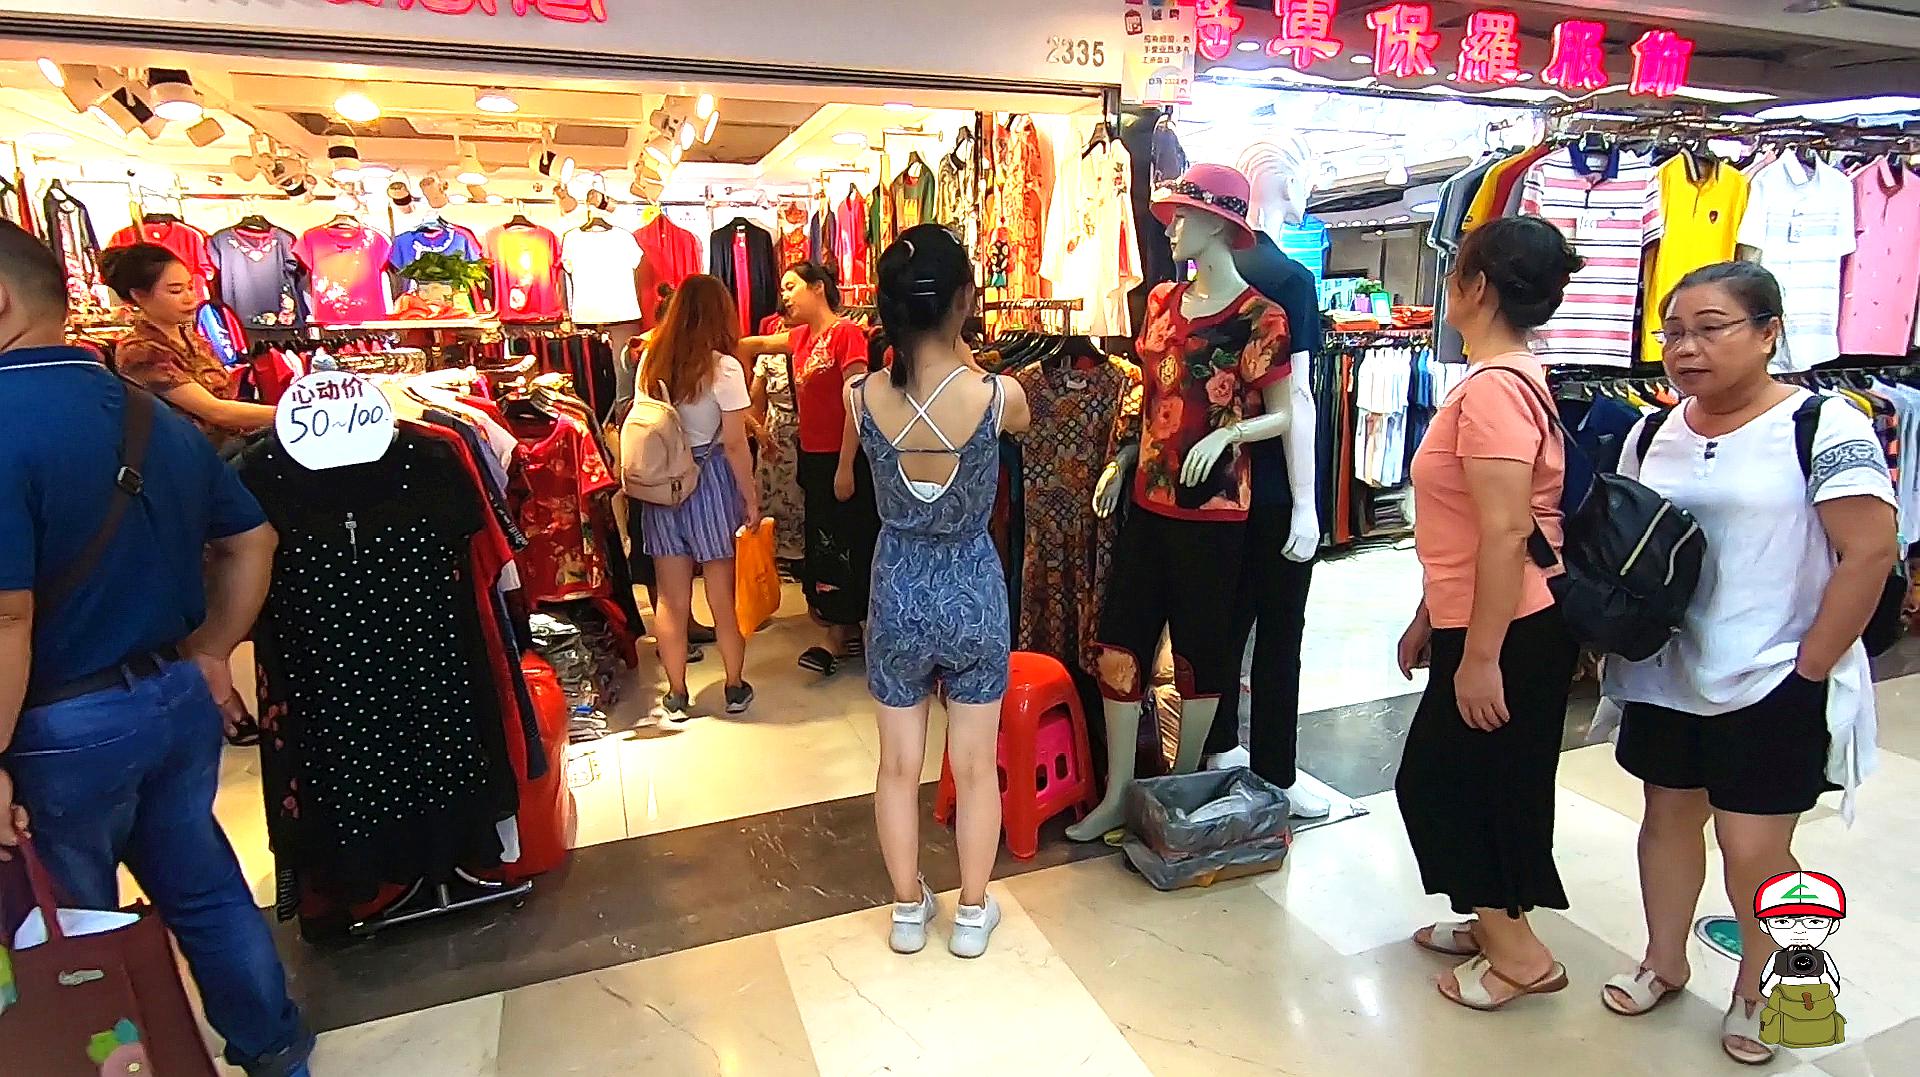 05:56  来源:好看视频-小艾去广州有名的服装批发市场,十三行,淘到了